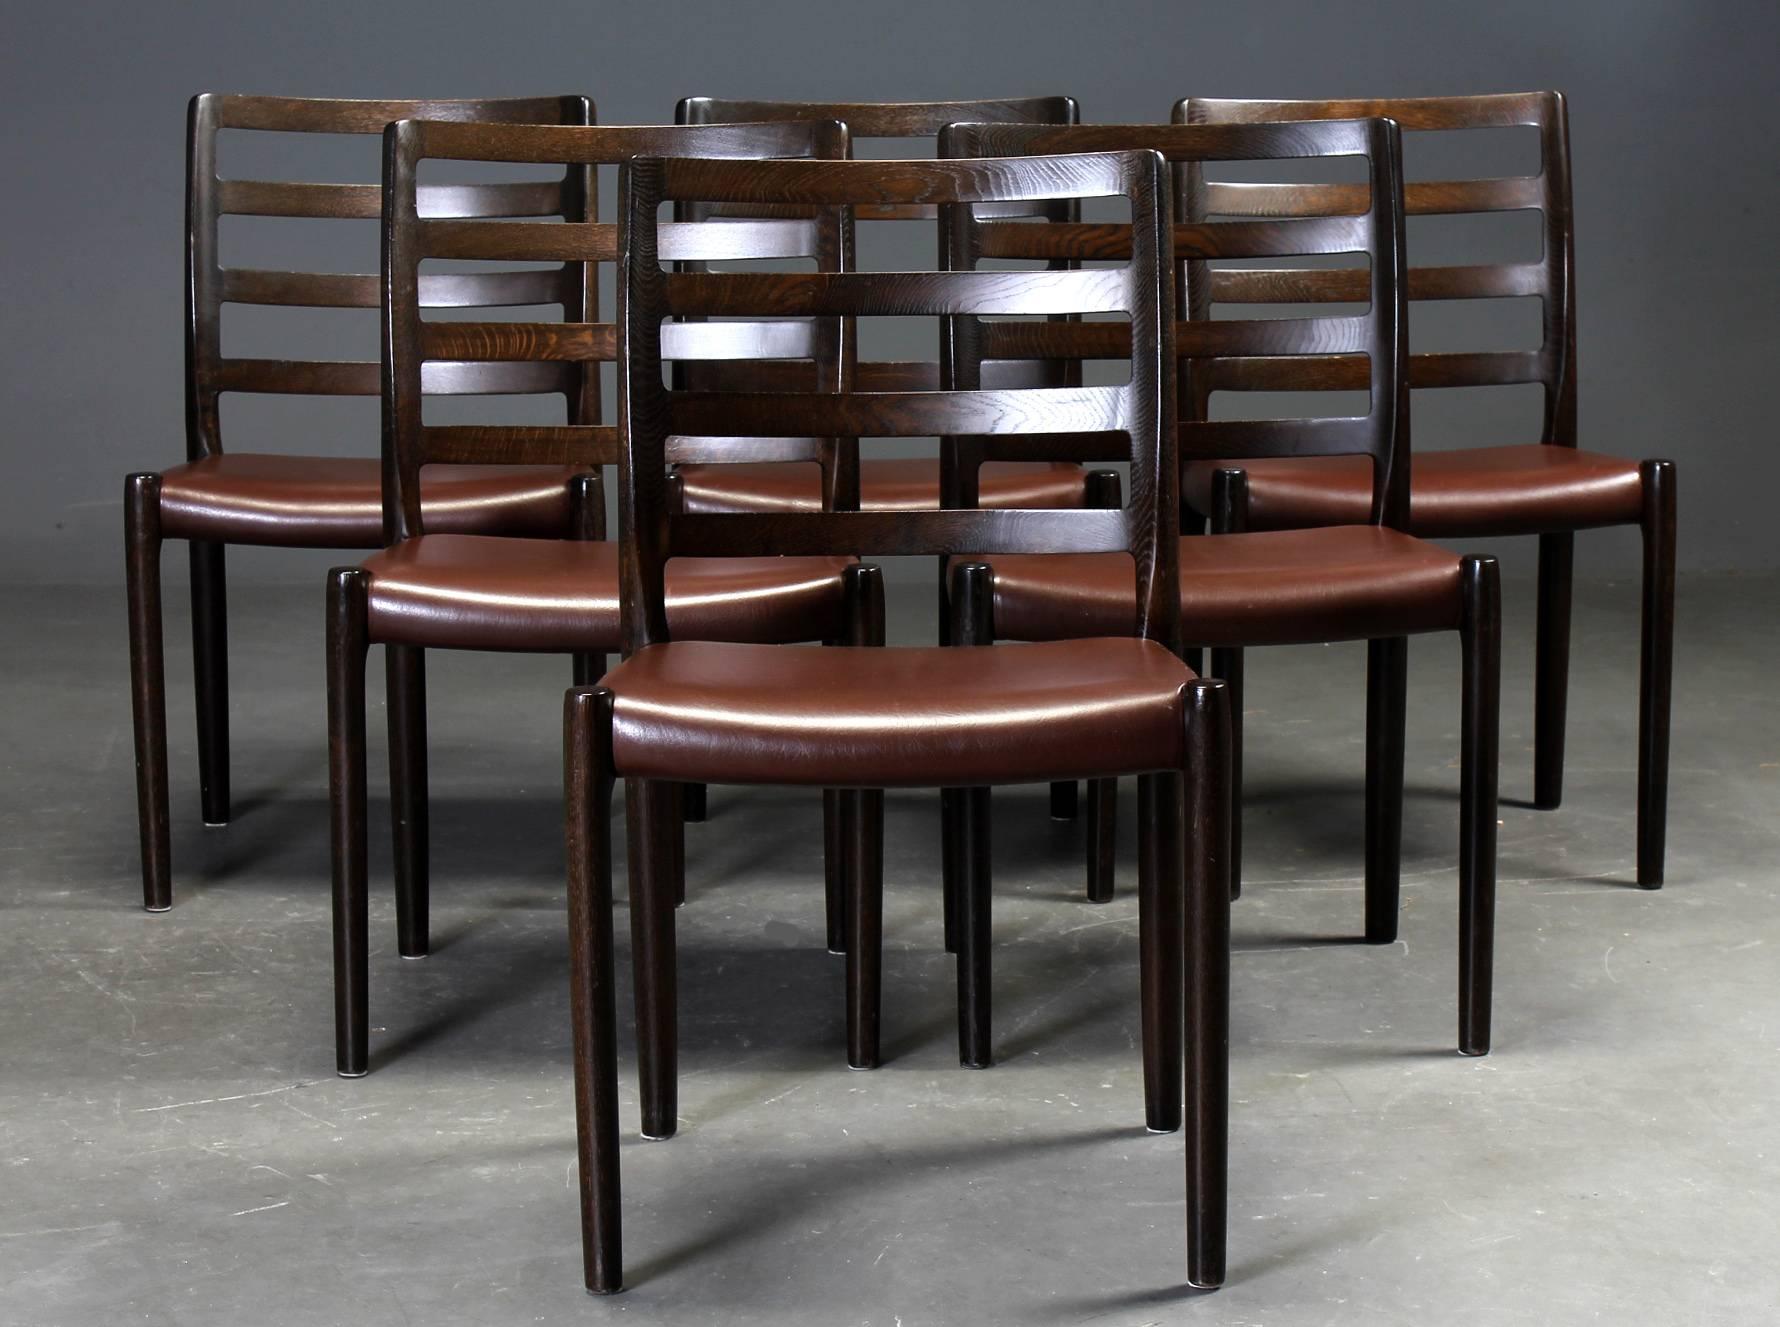 Chaises de salle à manger en chêne par Niels O. Møller pour I.L.A. Moller. La chaise modèle 85 est l'un des modèles les plus robustes de la vaste gamme de chaises de Moller. Il s'agit de chaises parfaitement construites et de grande forme. Conçue en